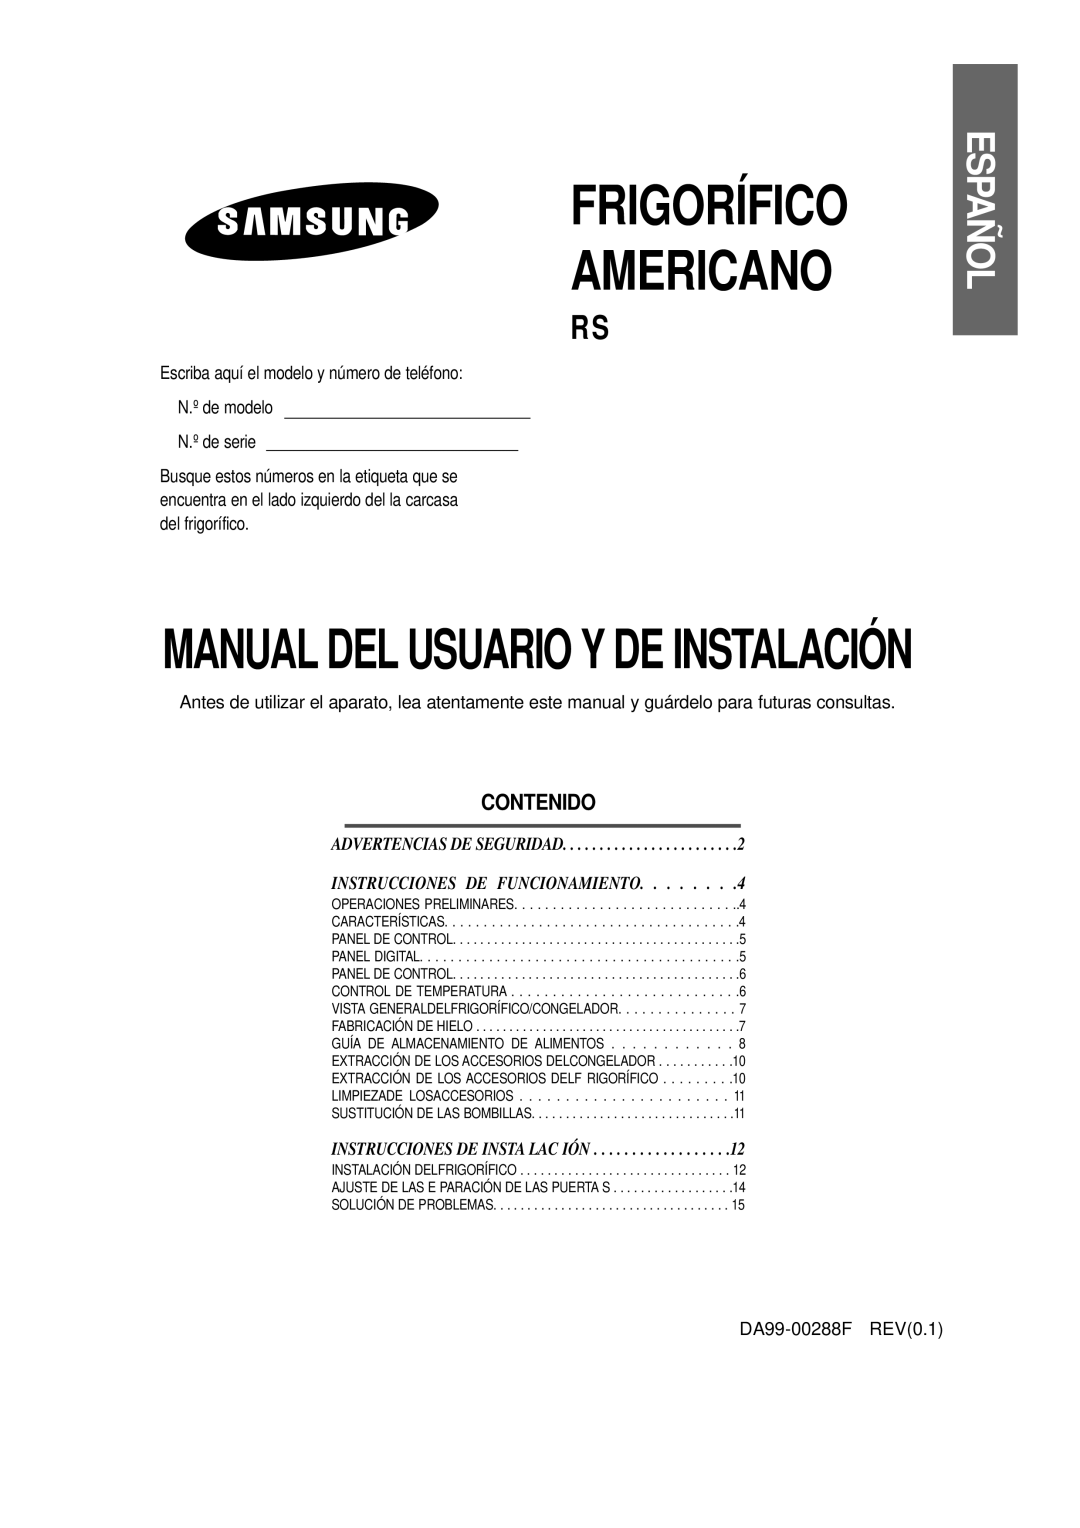 Samsung RS20NCSW1/XEF, RS20NCSL1/XEF manual Español, Contenido, Frigorífico Americano, Manual Del Usuario Y De Instalación 